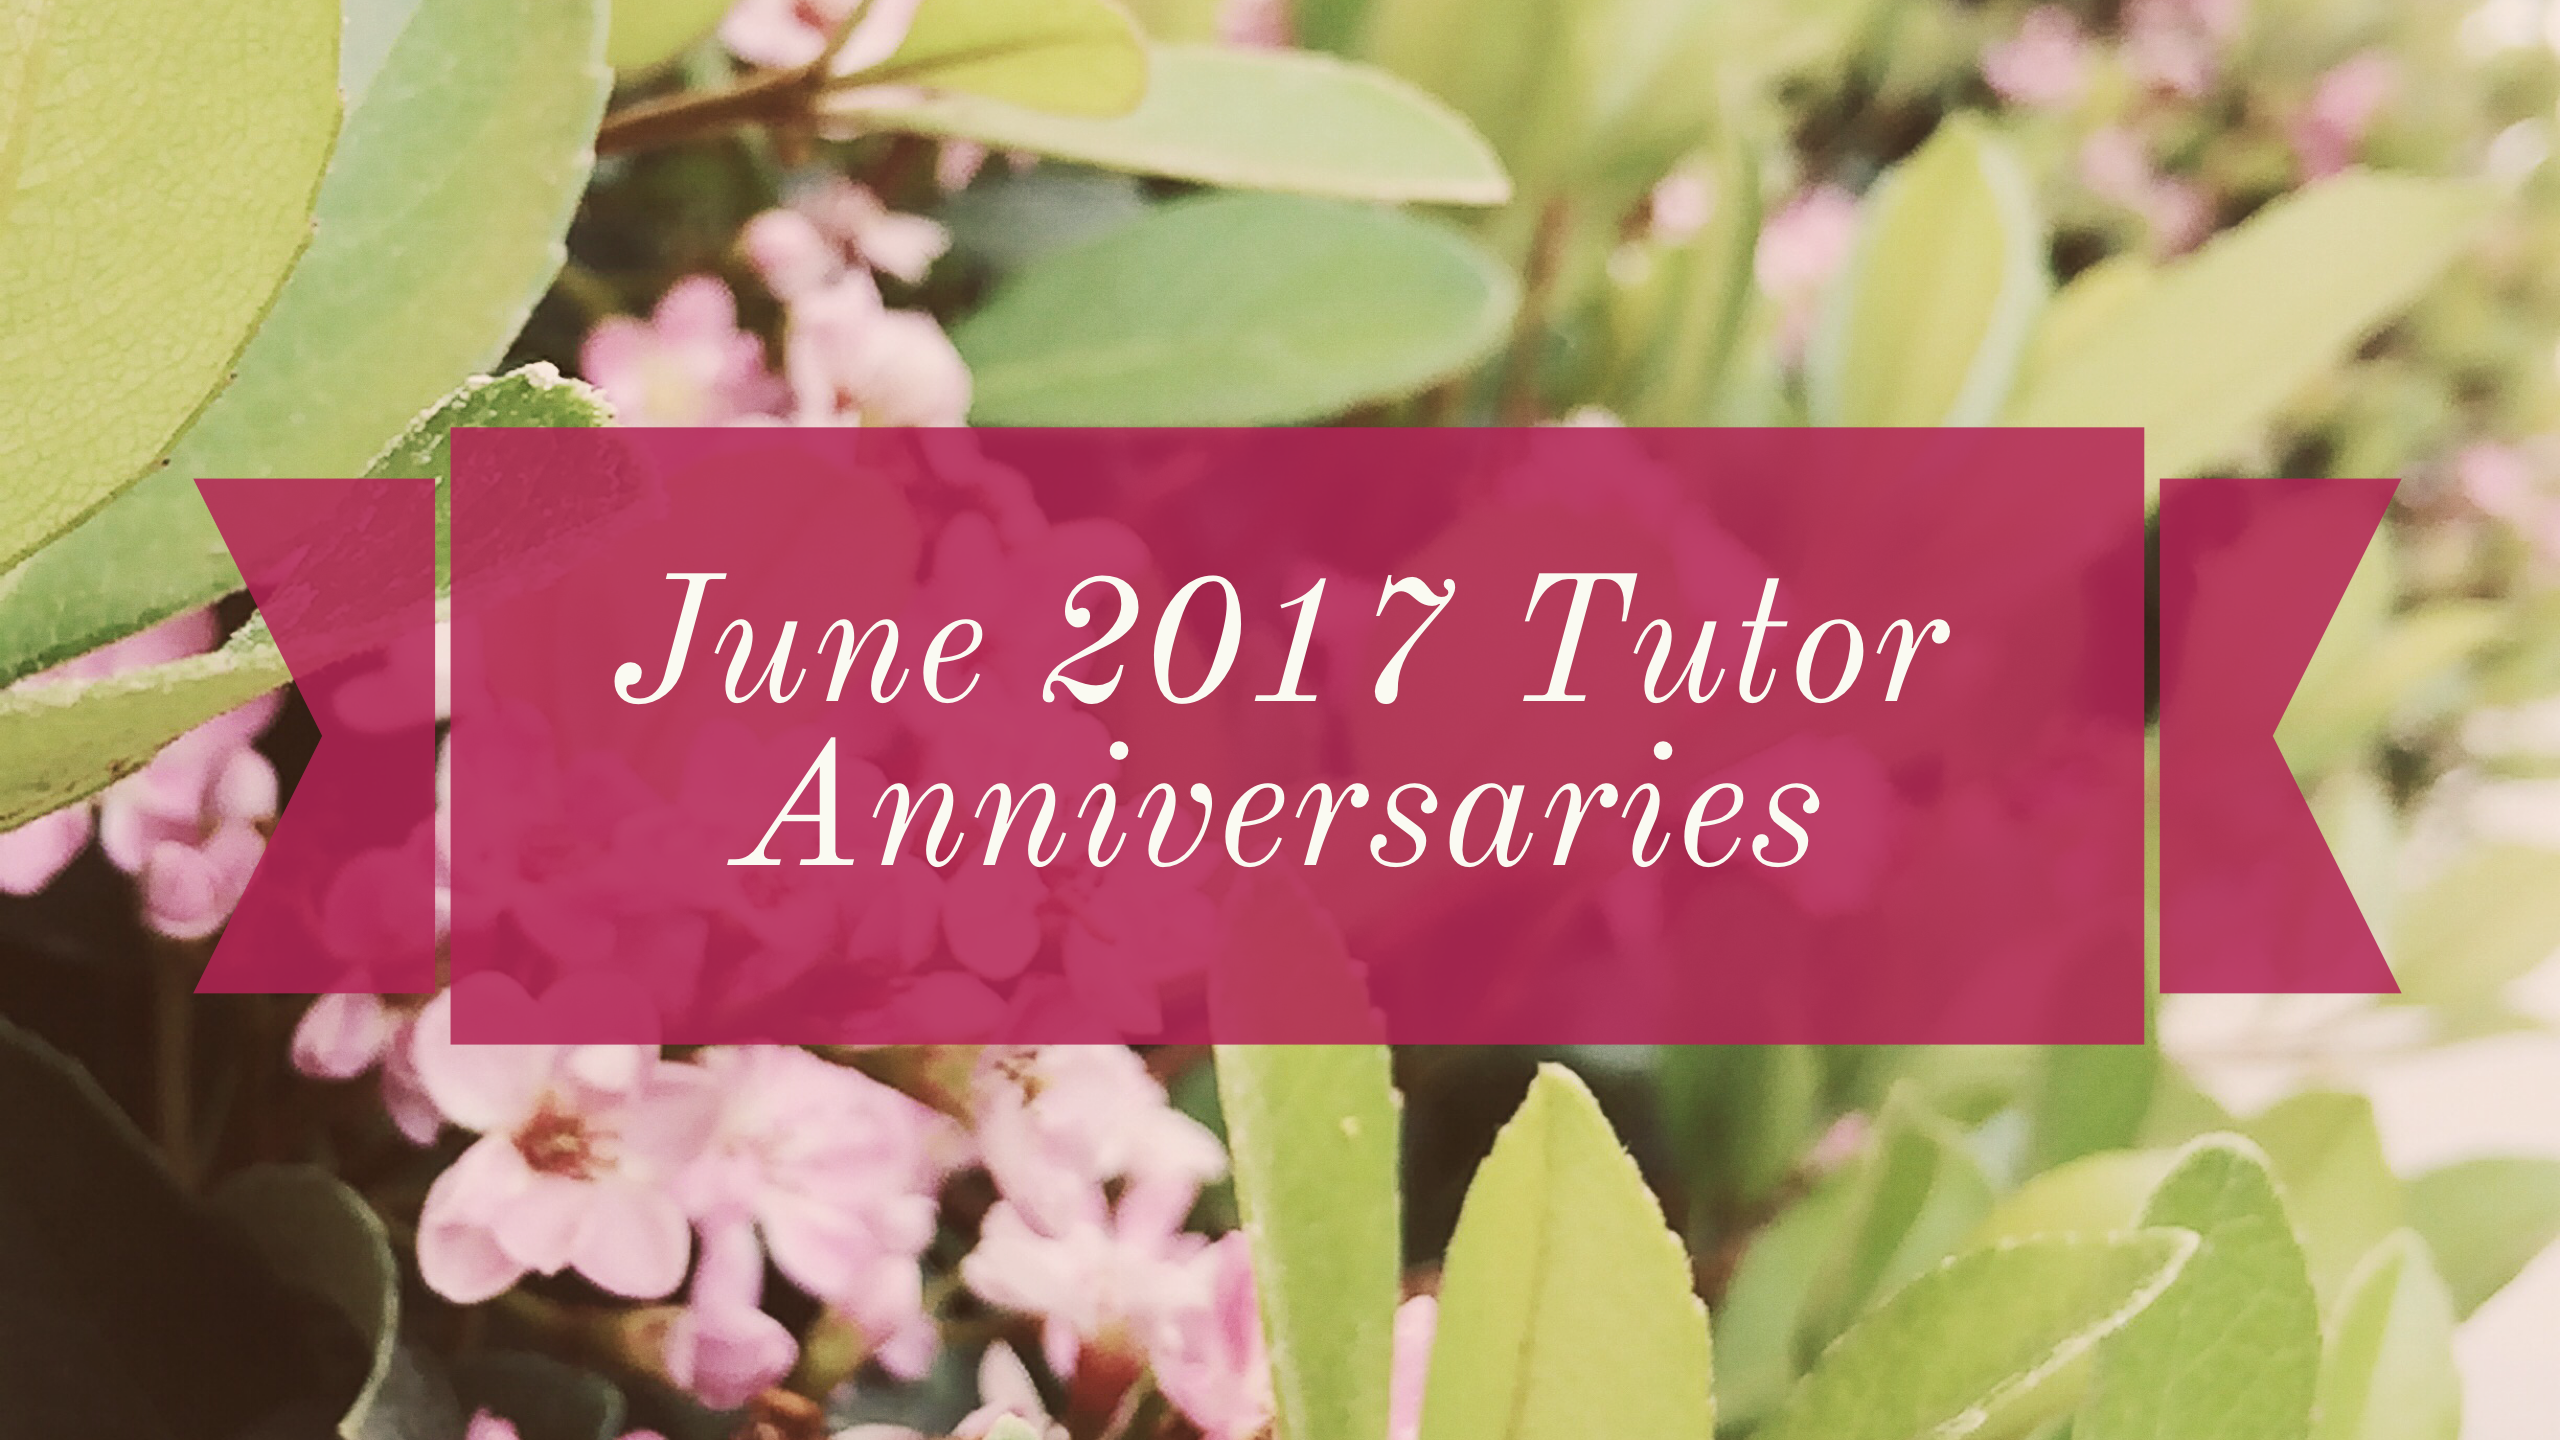 Tutor Anniversaries June 2017